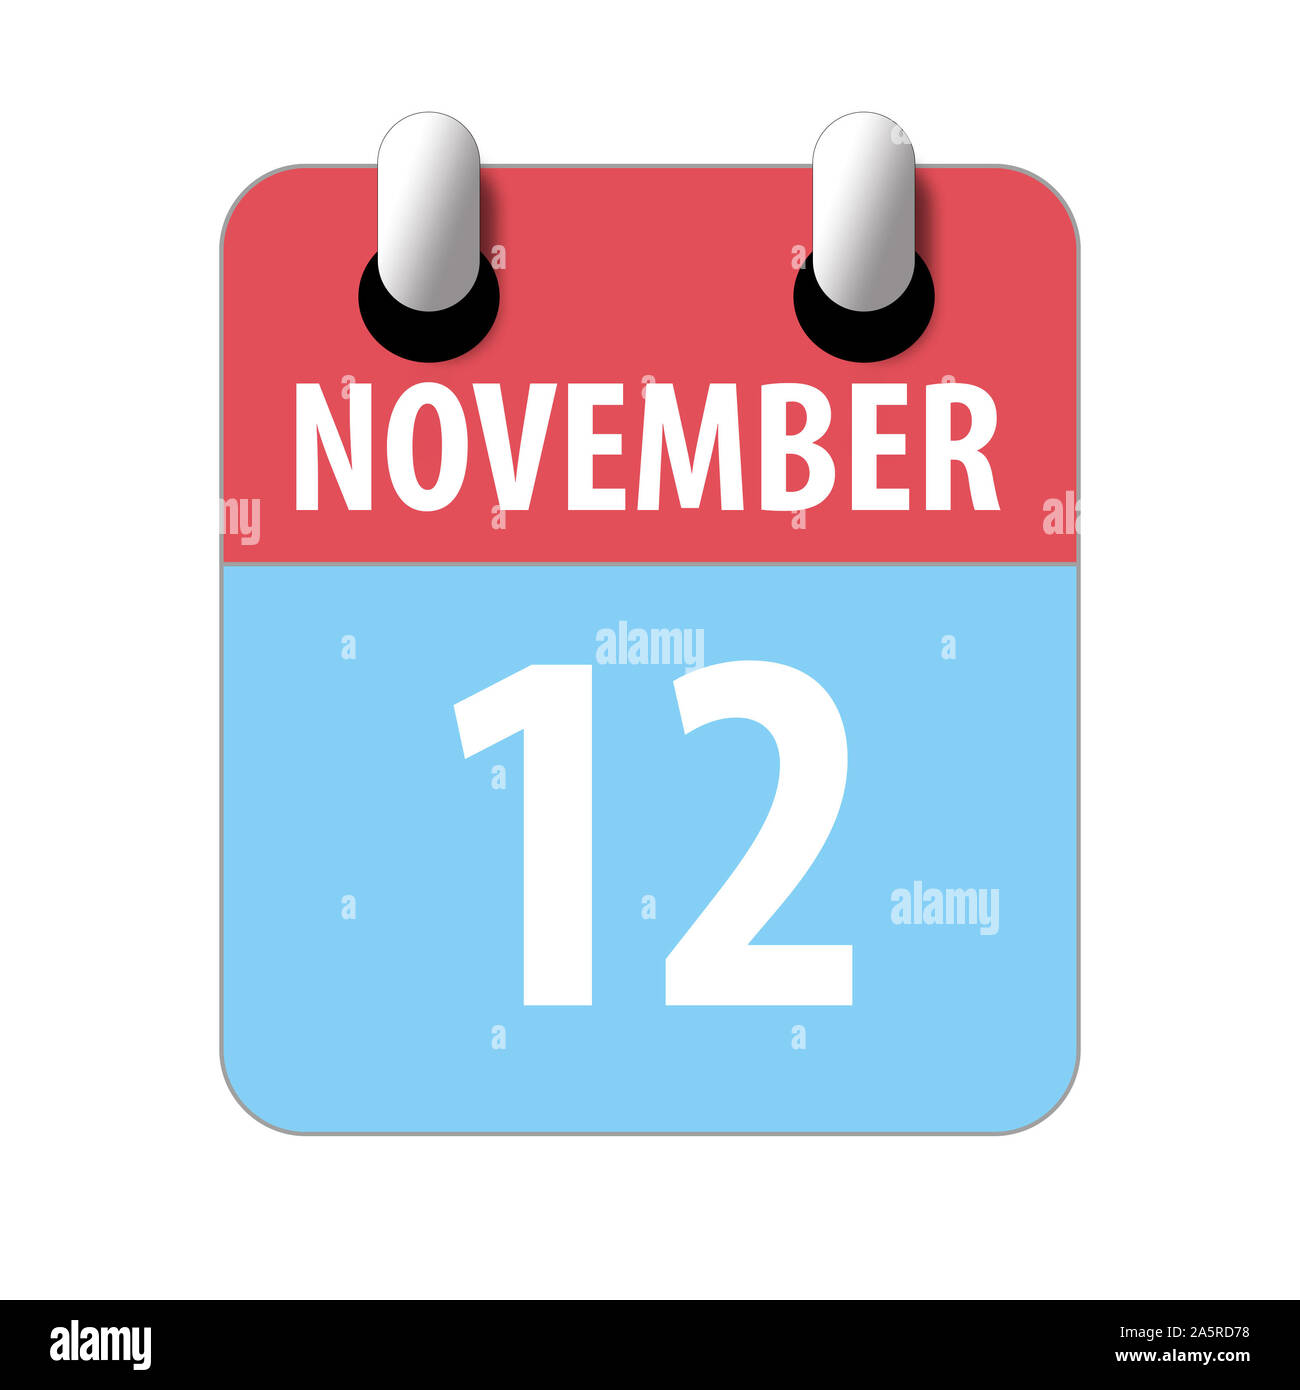 12 month calendar Banque d'images détourées - Alamy